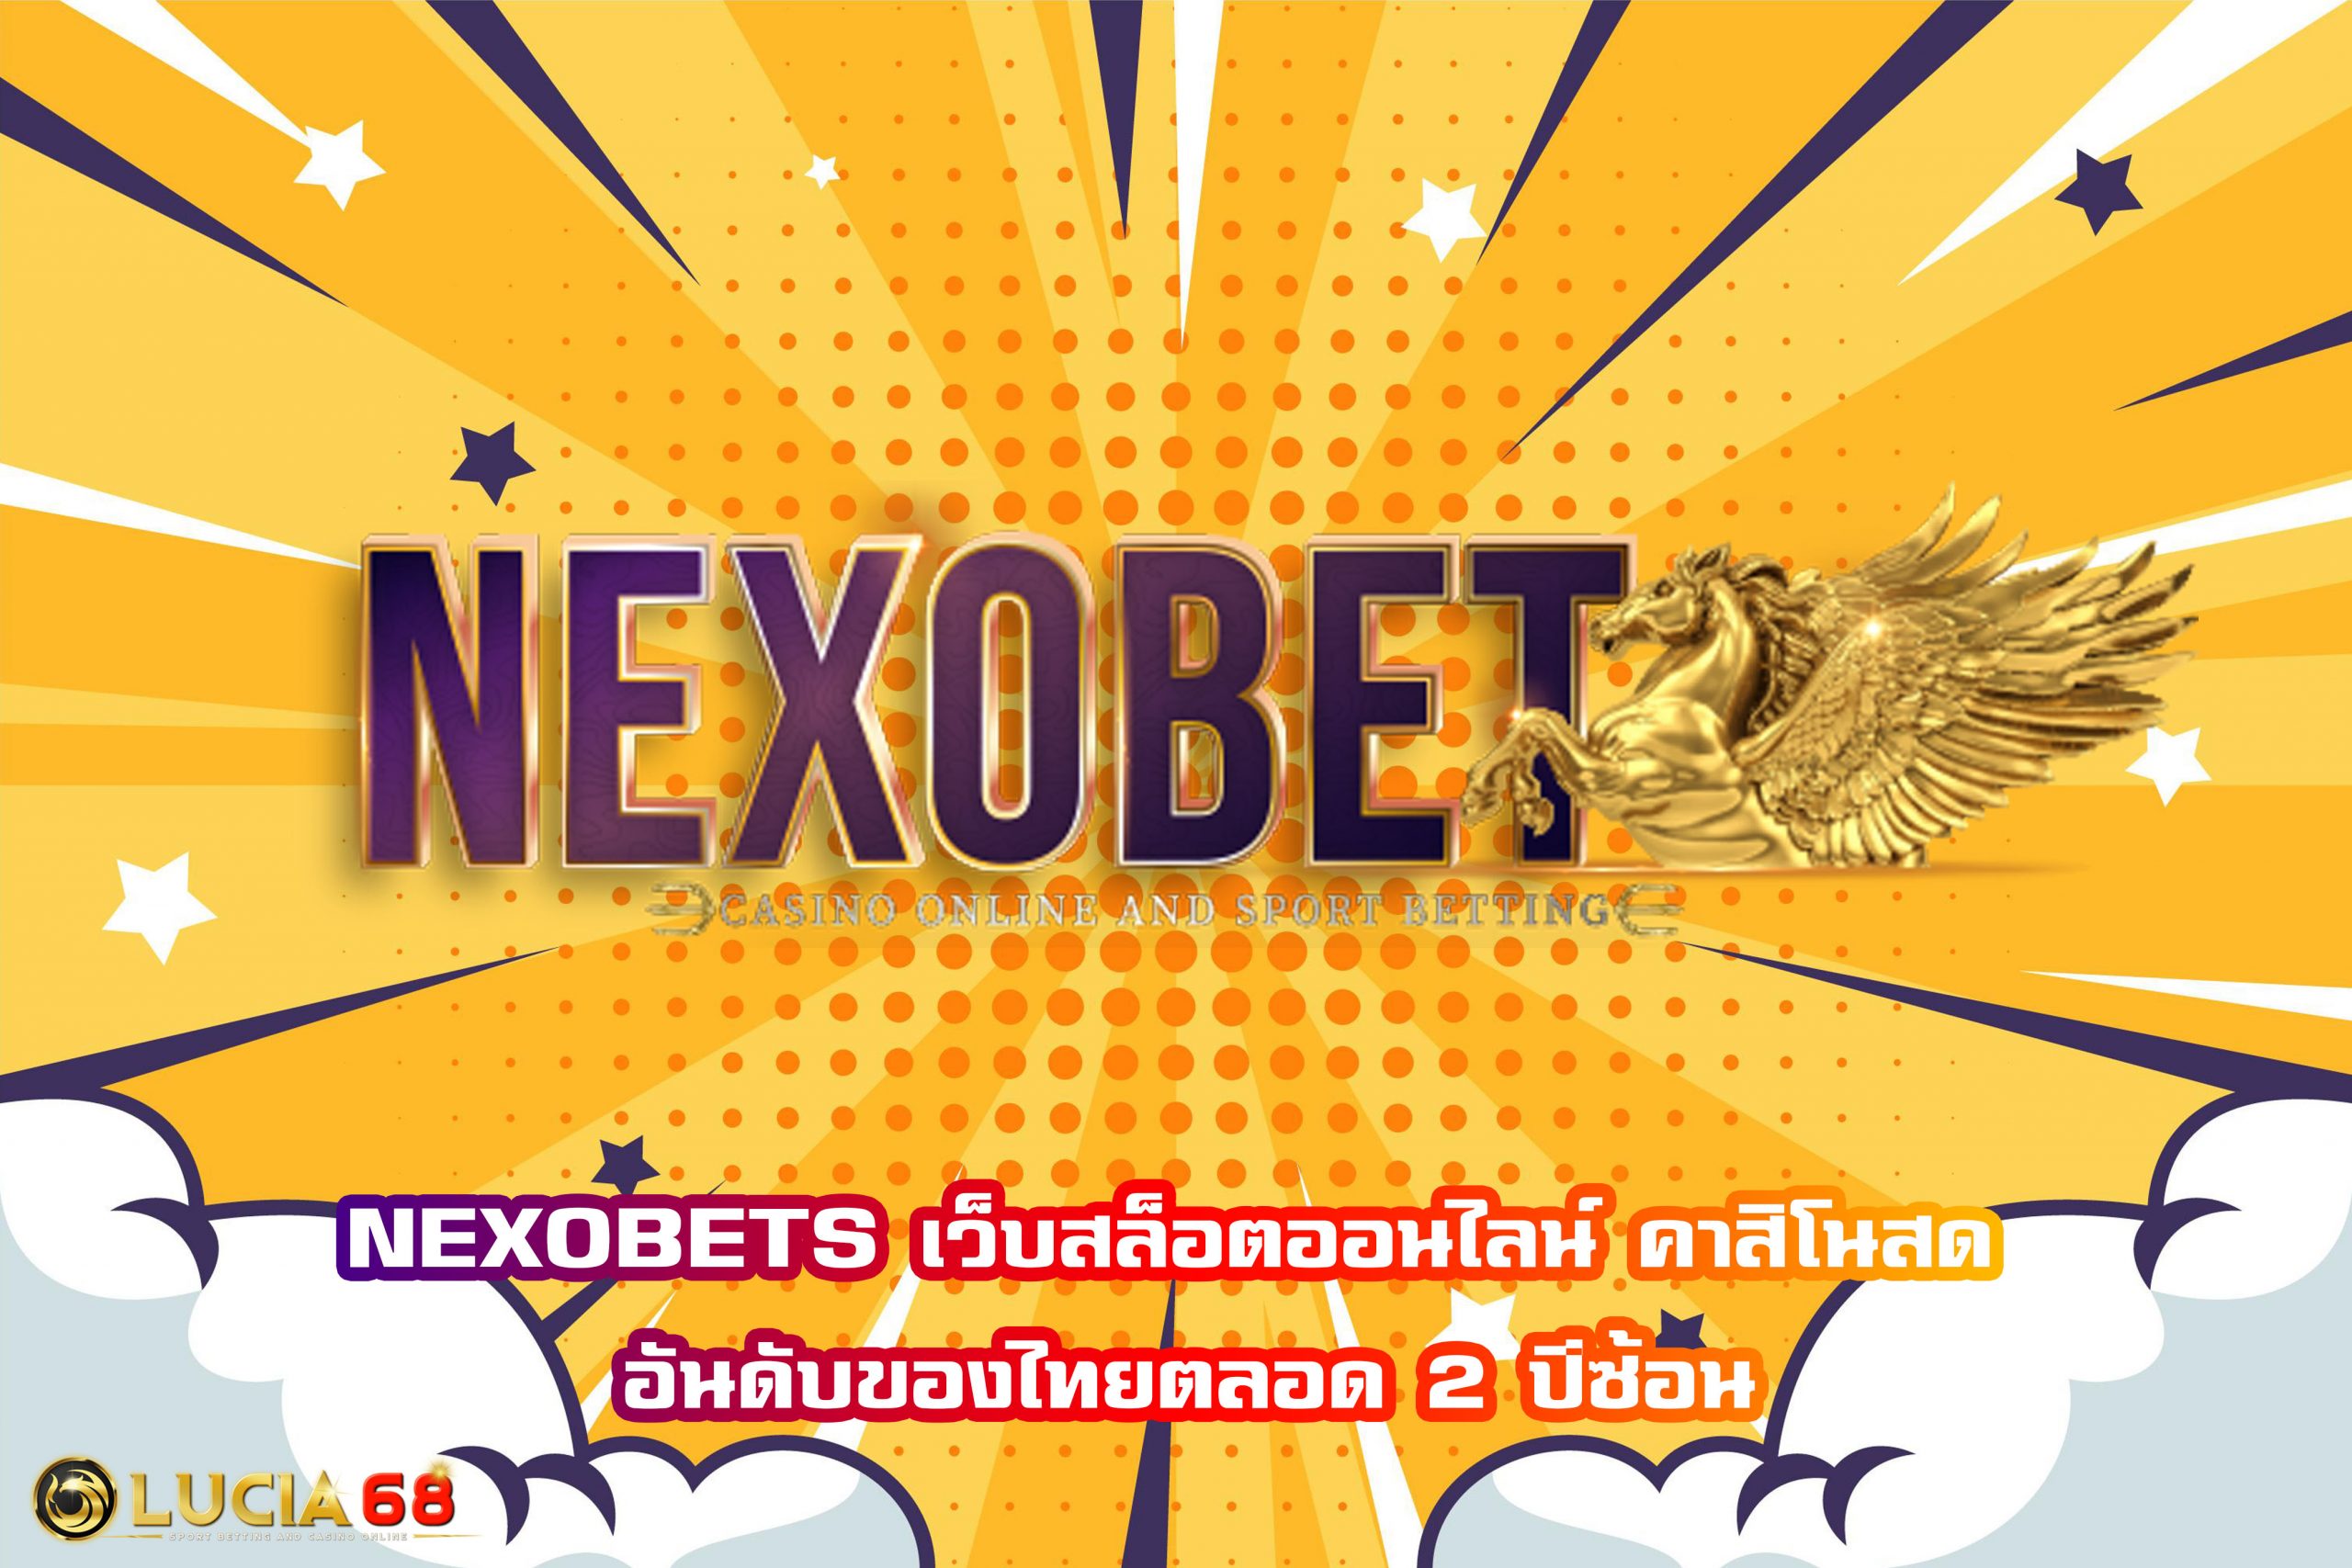 NEXOBETS เว็บสล็อตออนไลน์ คาสิโนสด อันดับของไทยตลอด 2 ปีซ้อน